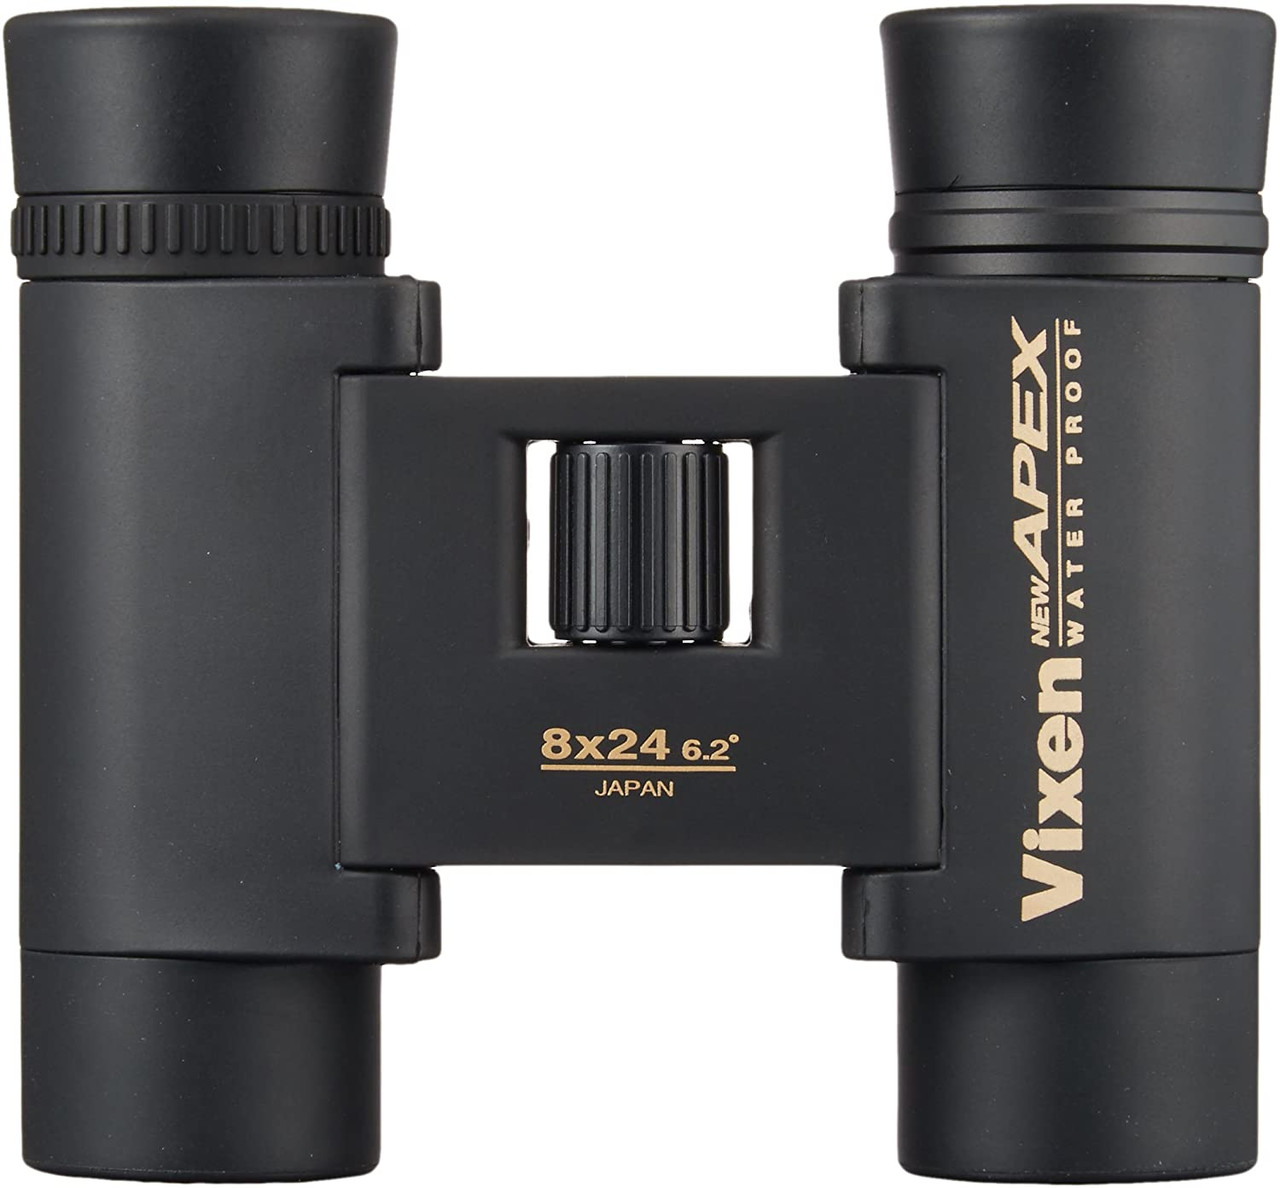 Vixen Binoculars New Apex Series HR8×24 1645-09